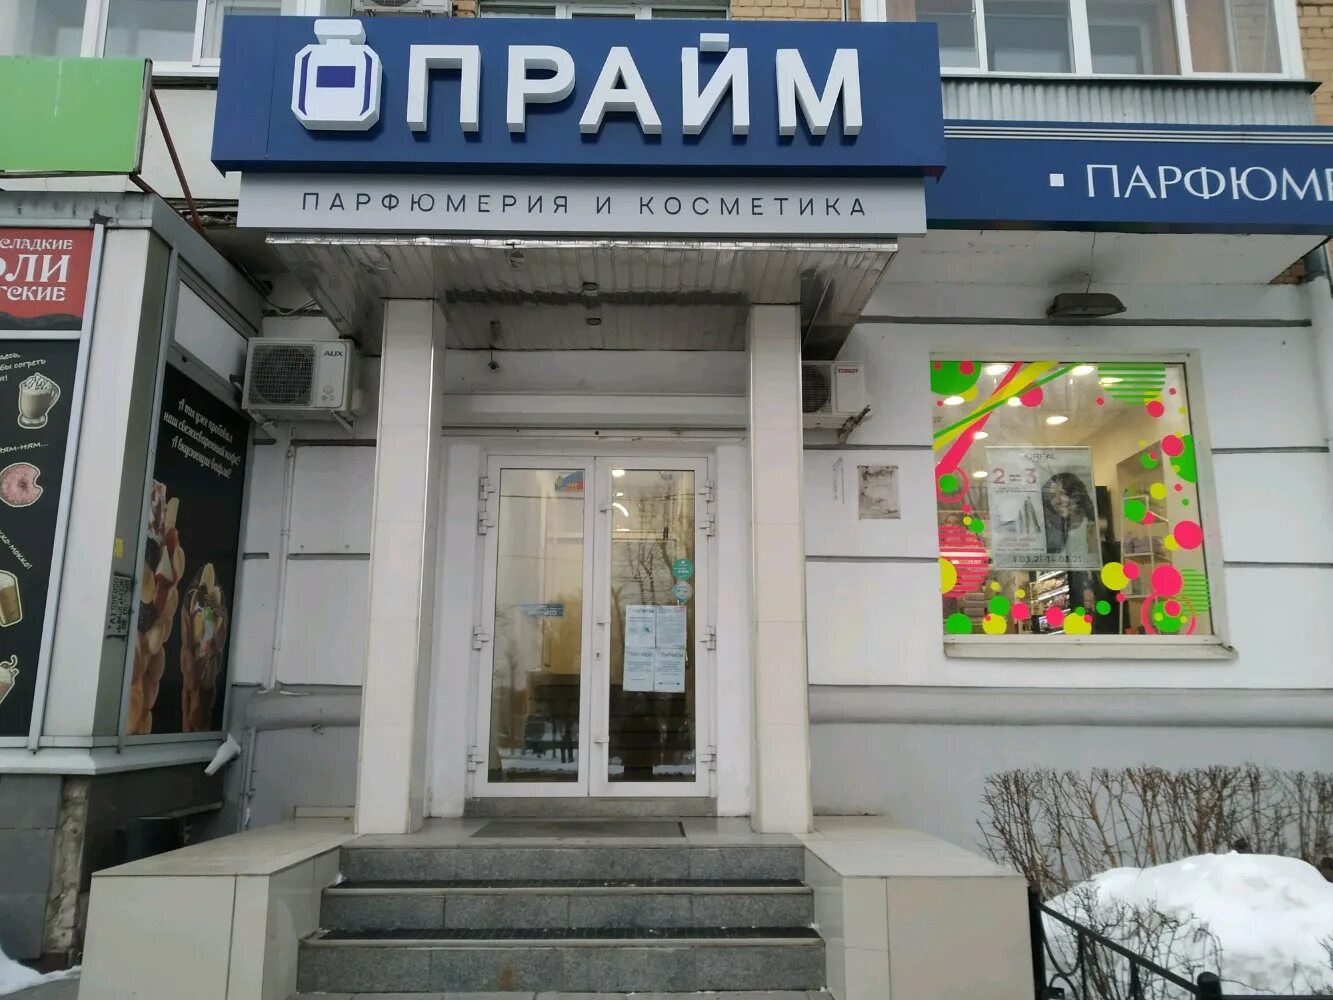 Магазин Парфюм в Олимпе Тверь.